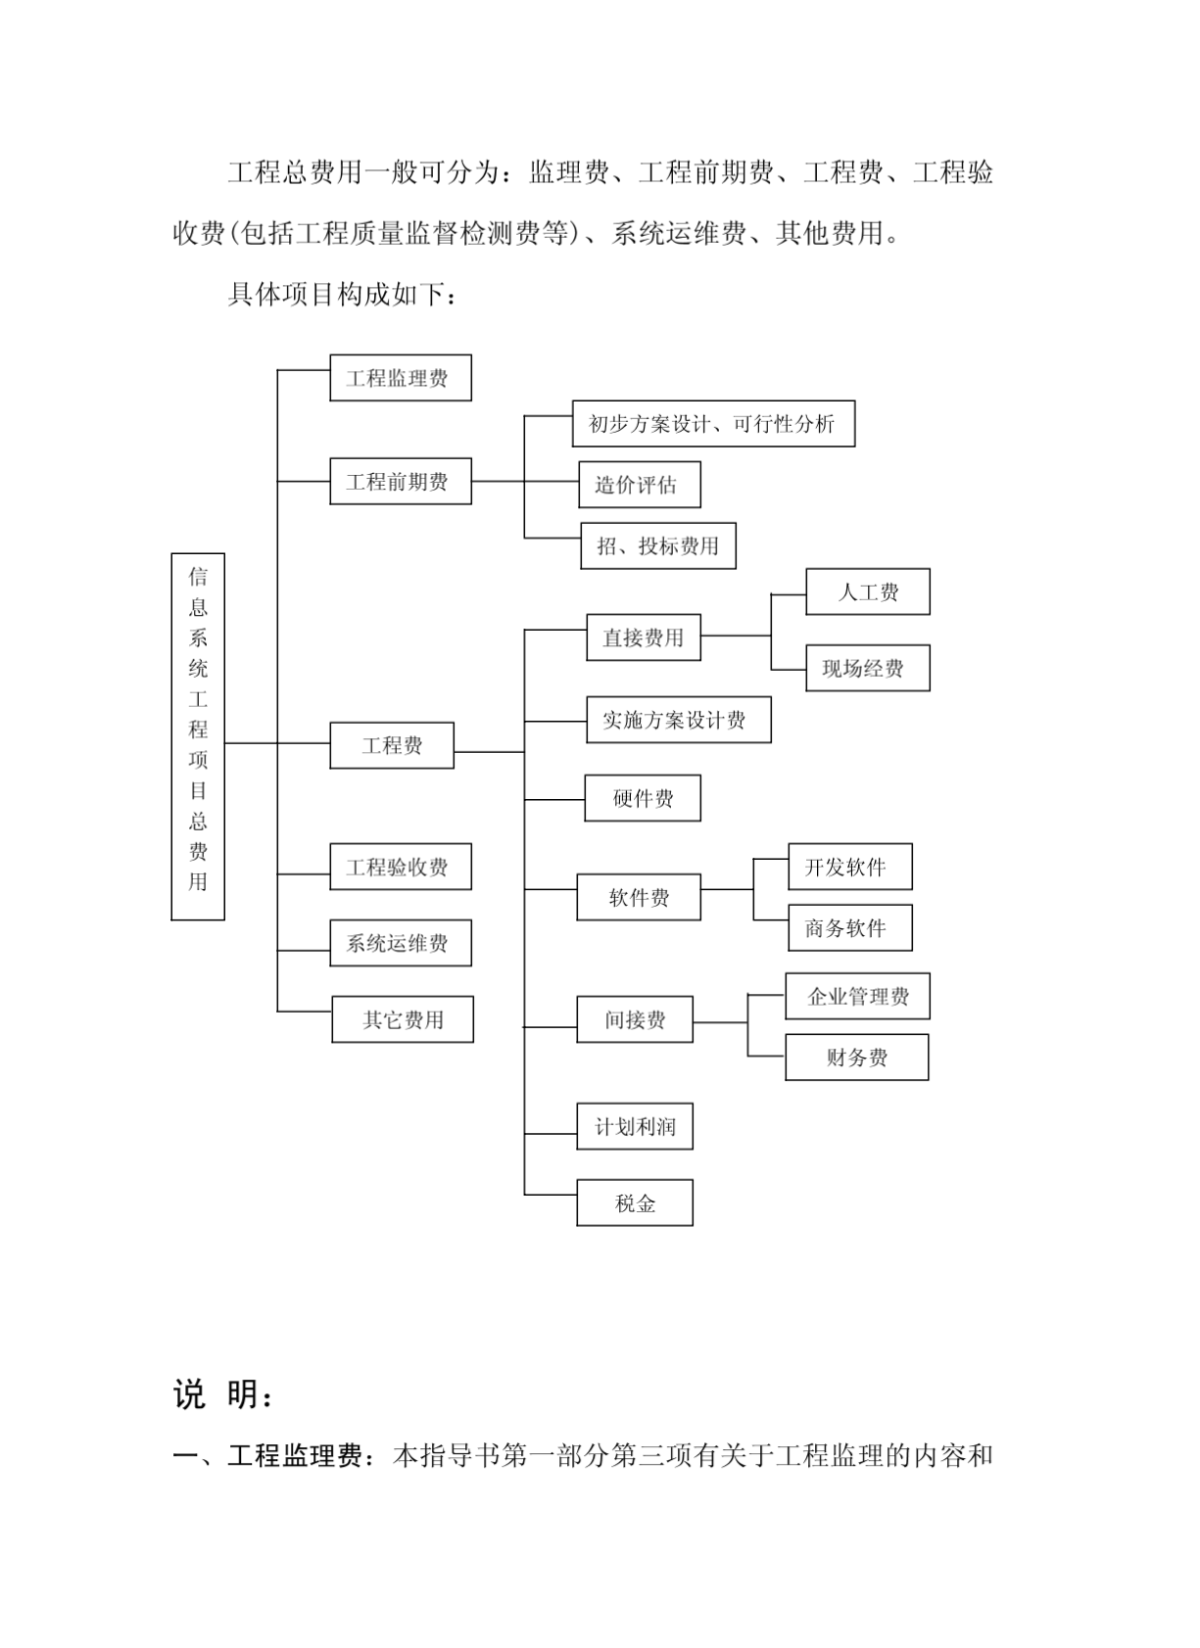 深圳市信息系统工程造价指导书-工程项目总费用-图一